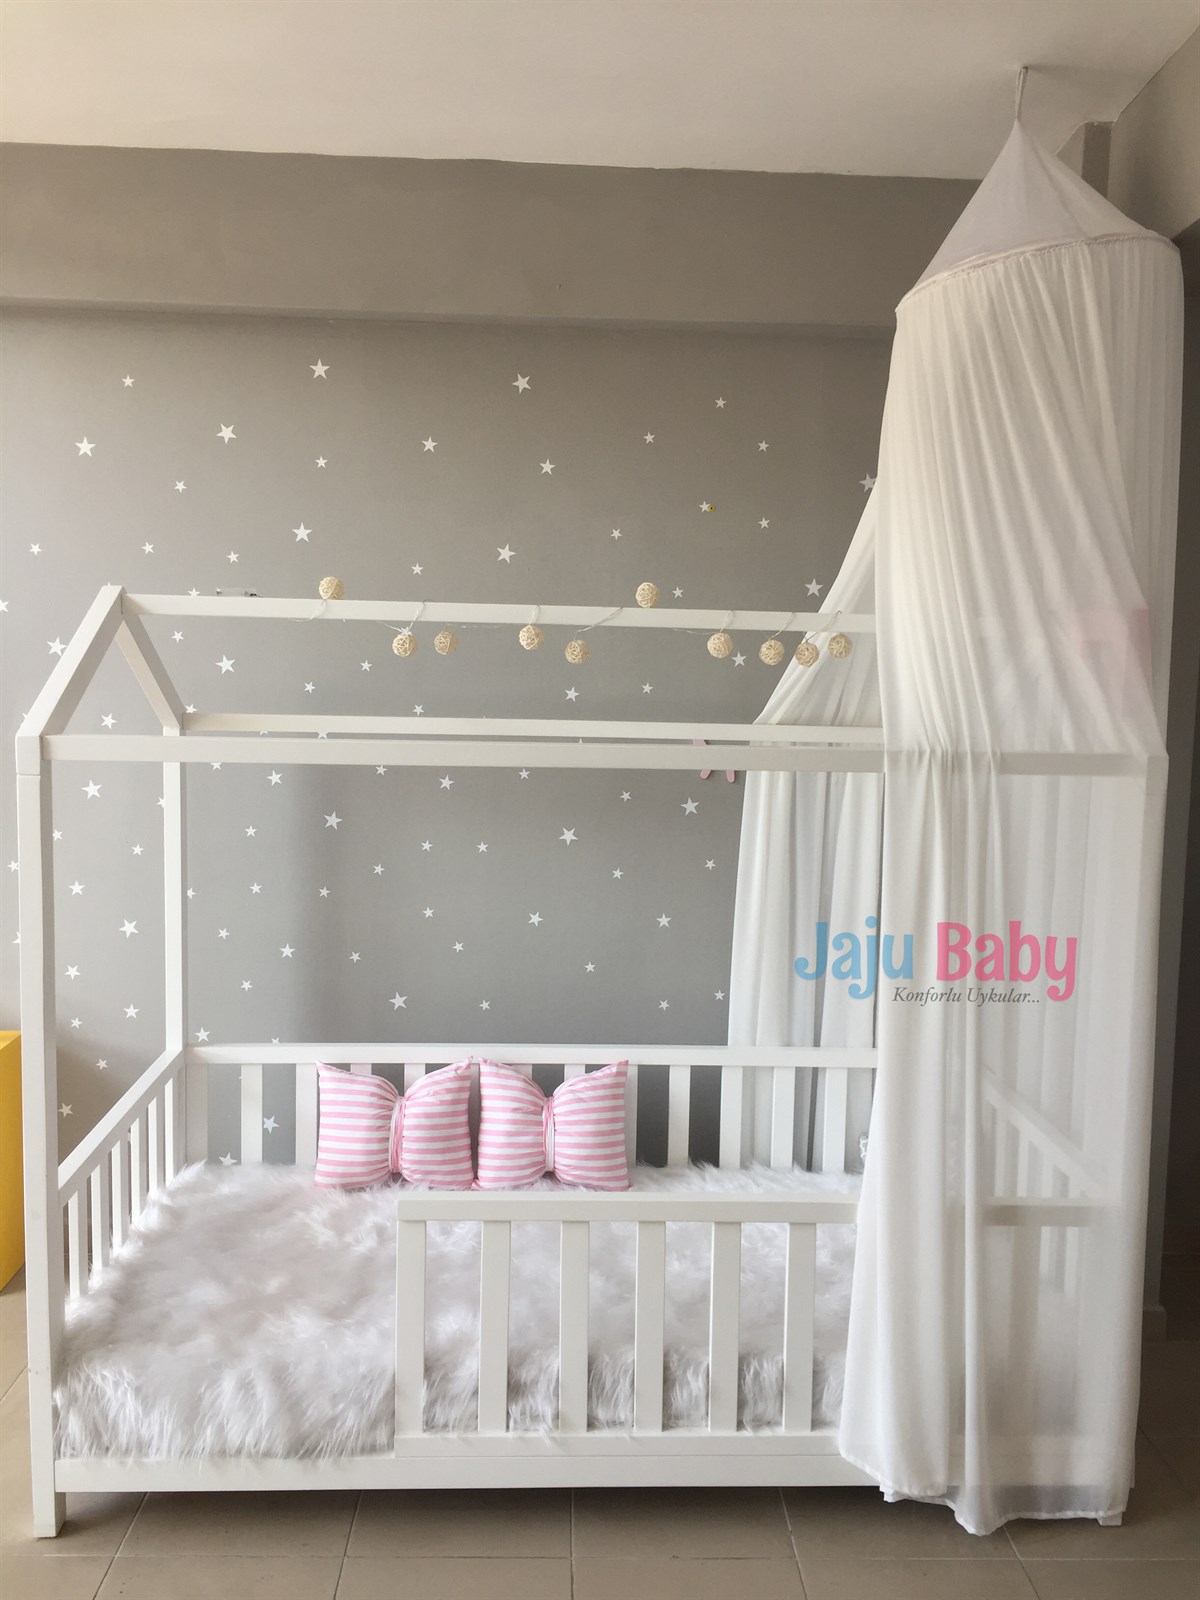 Jaju Baby Beyaz Cibinlik | JajuBaby.Com Türkiye'nin Orjinal Bebek Mağazası